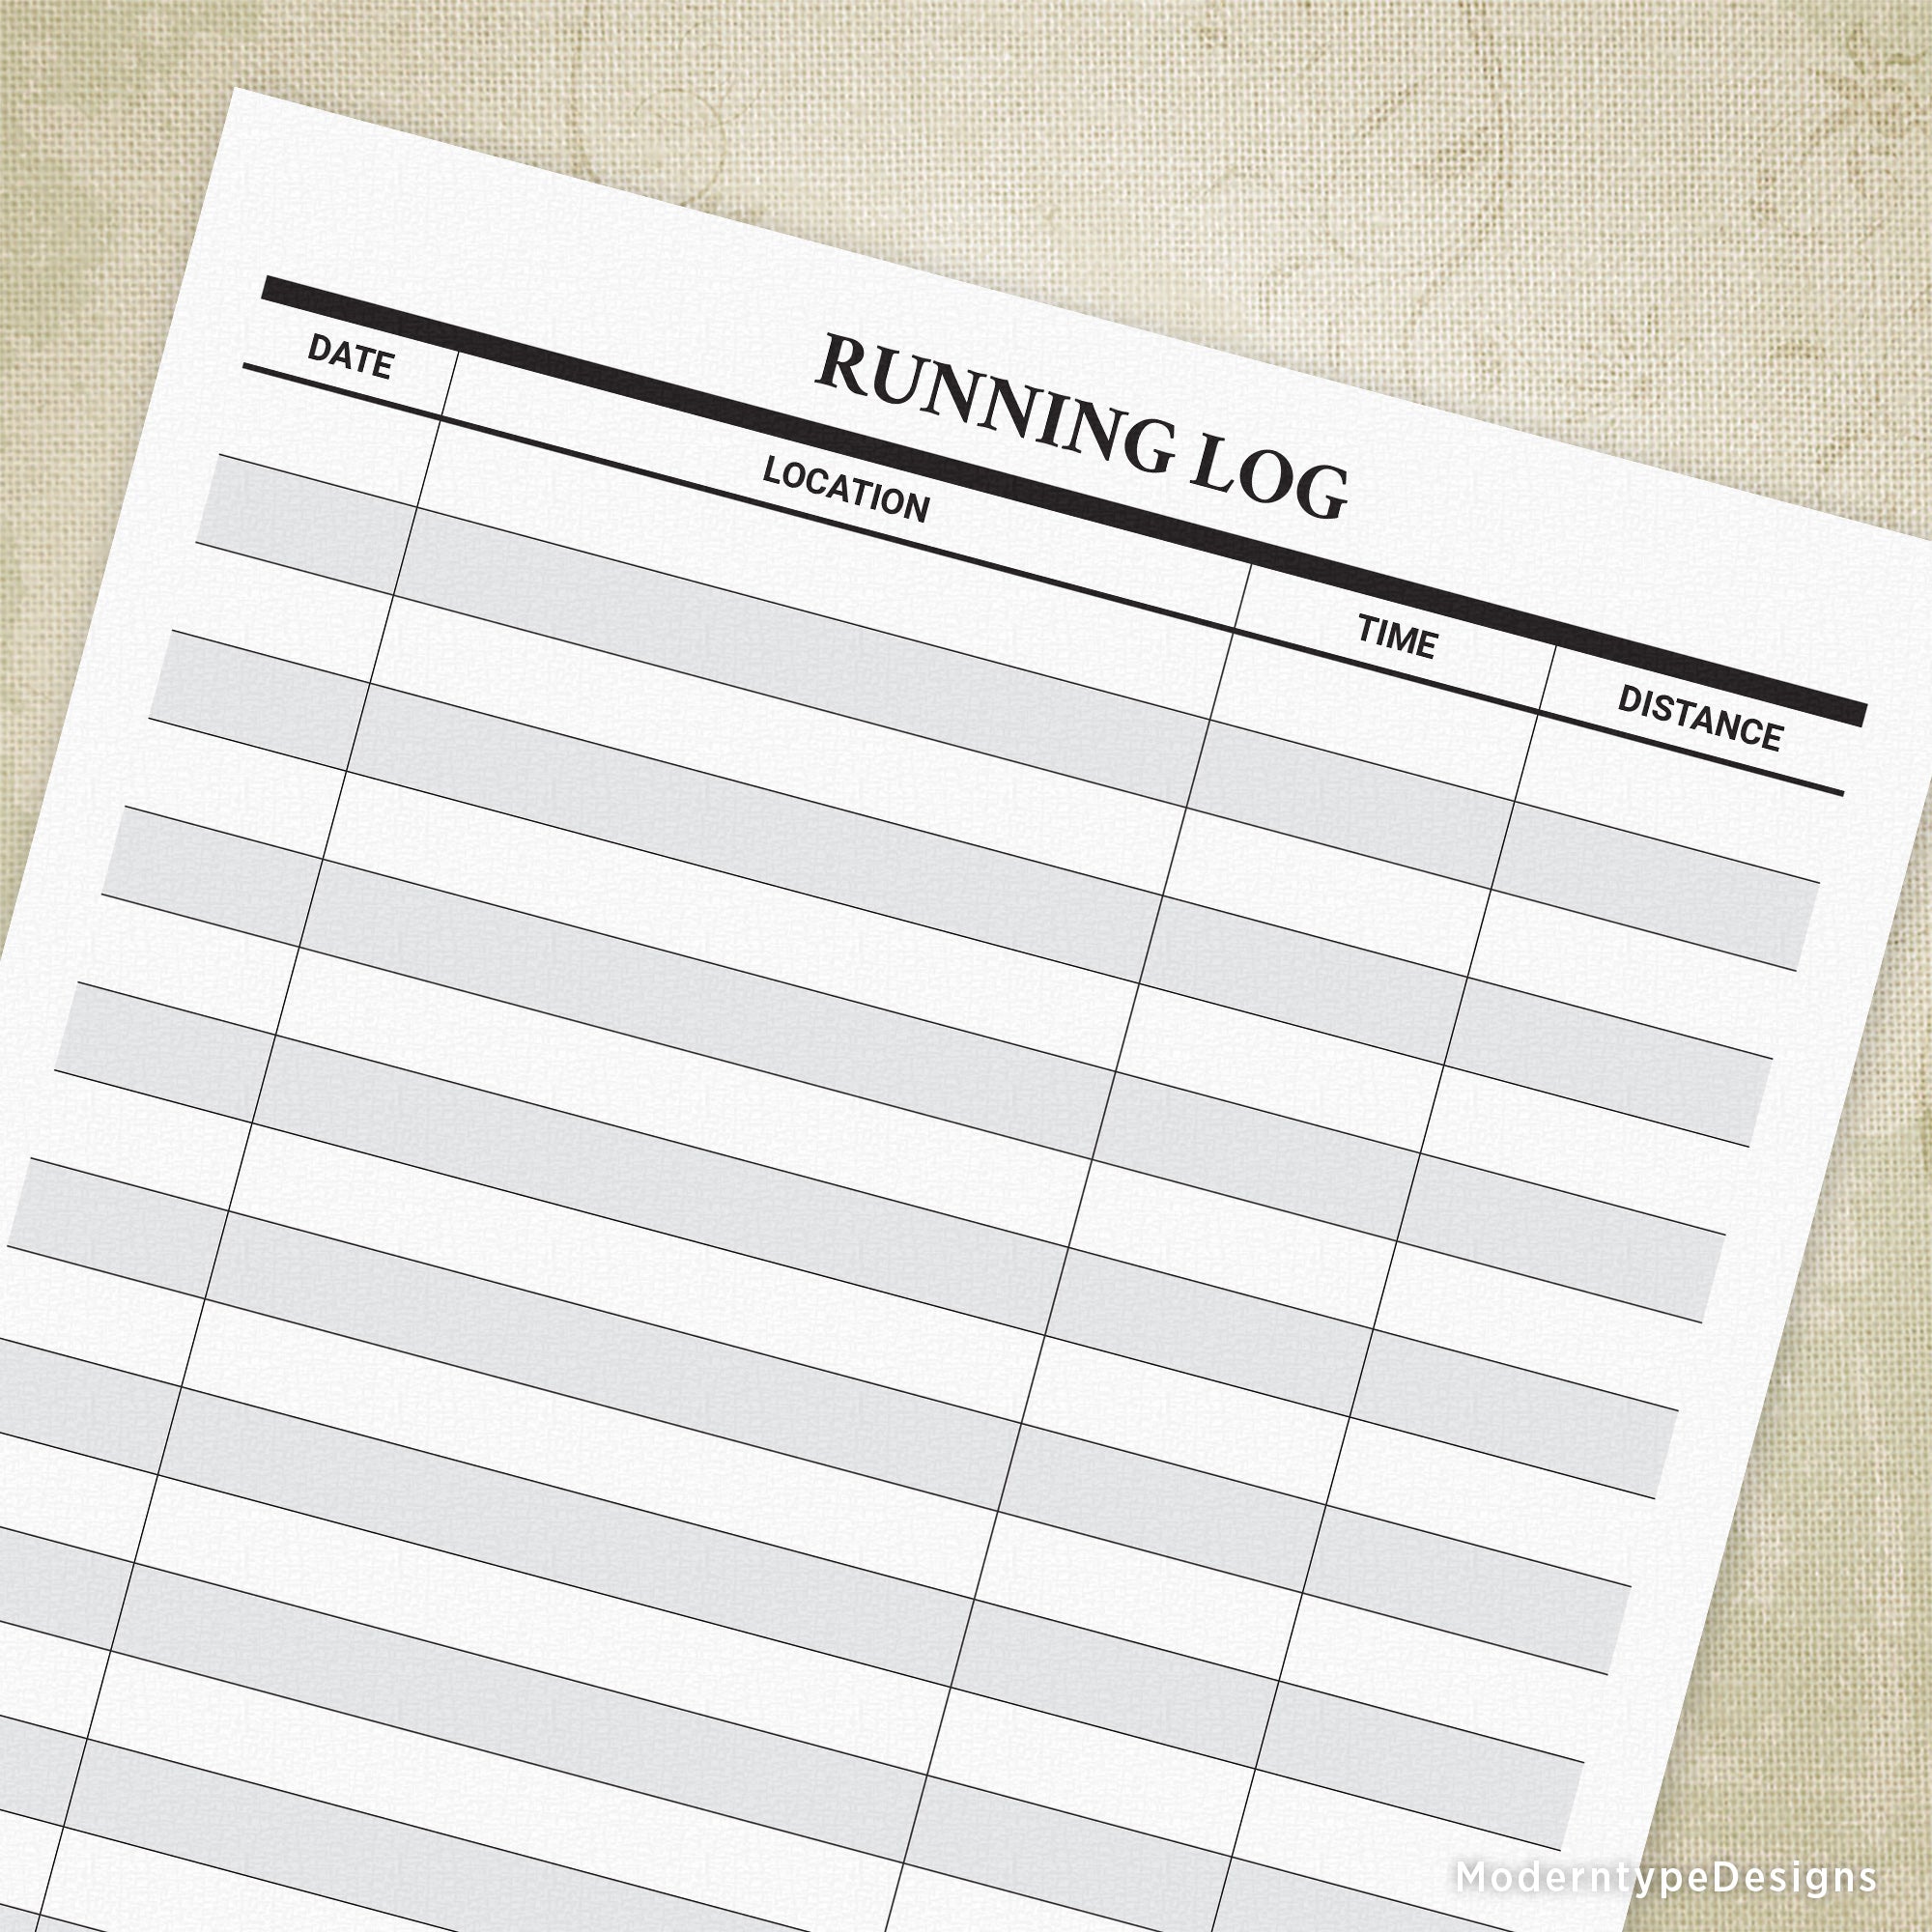 Running Log Printable for Runners